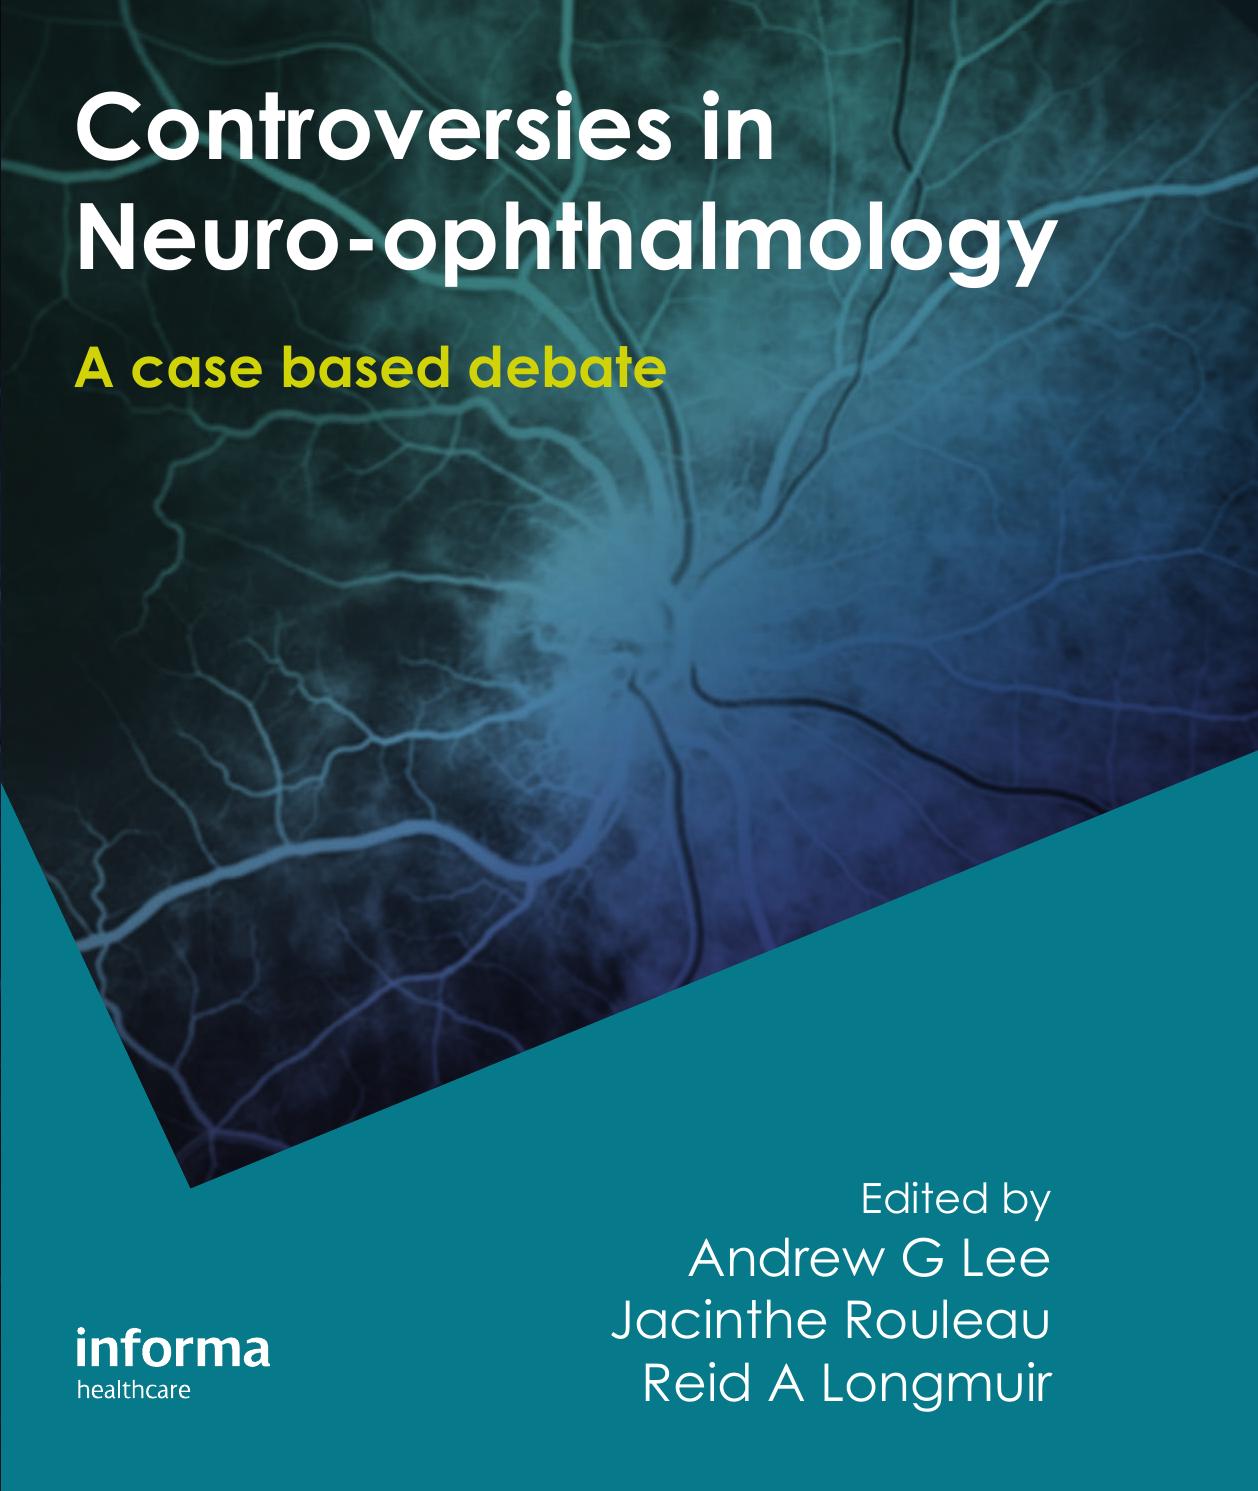 Controversies in Neuro-Ophthalmology-Andrew G. Lee, Jacinthe Rouleau, Reid Longmuir.jpg